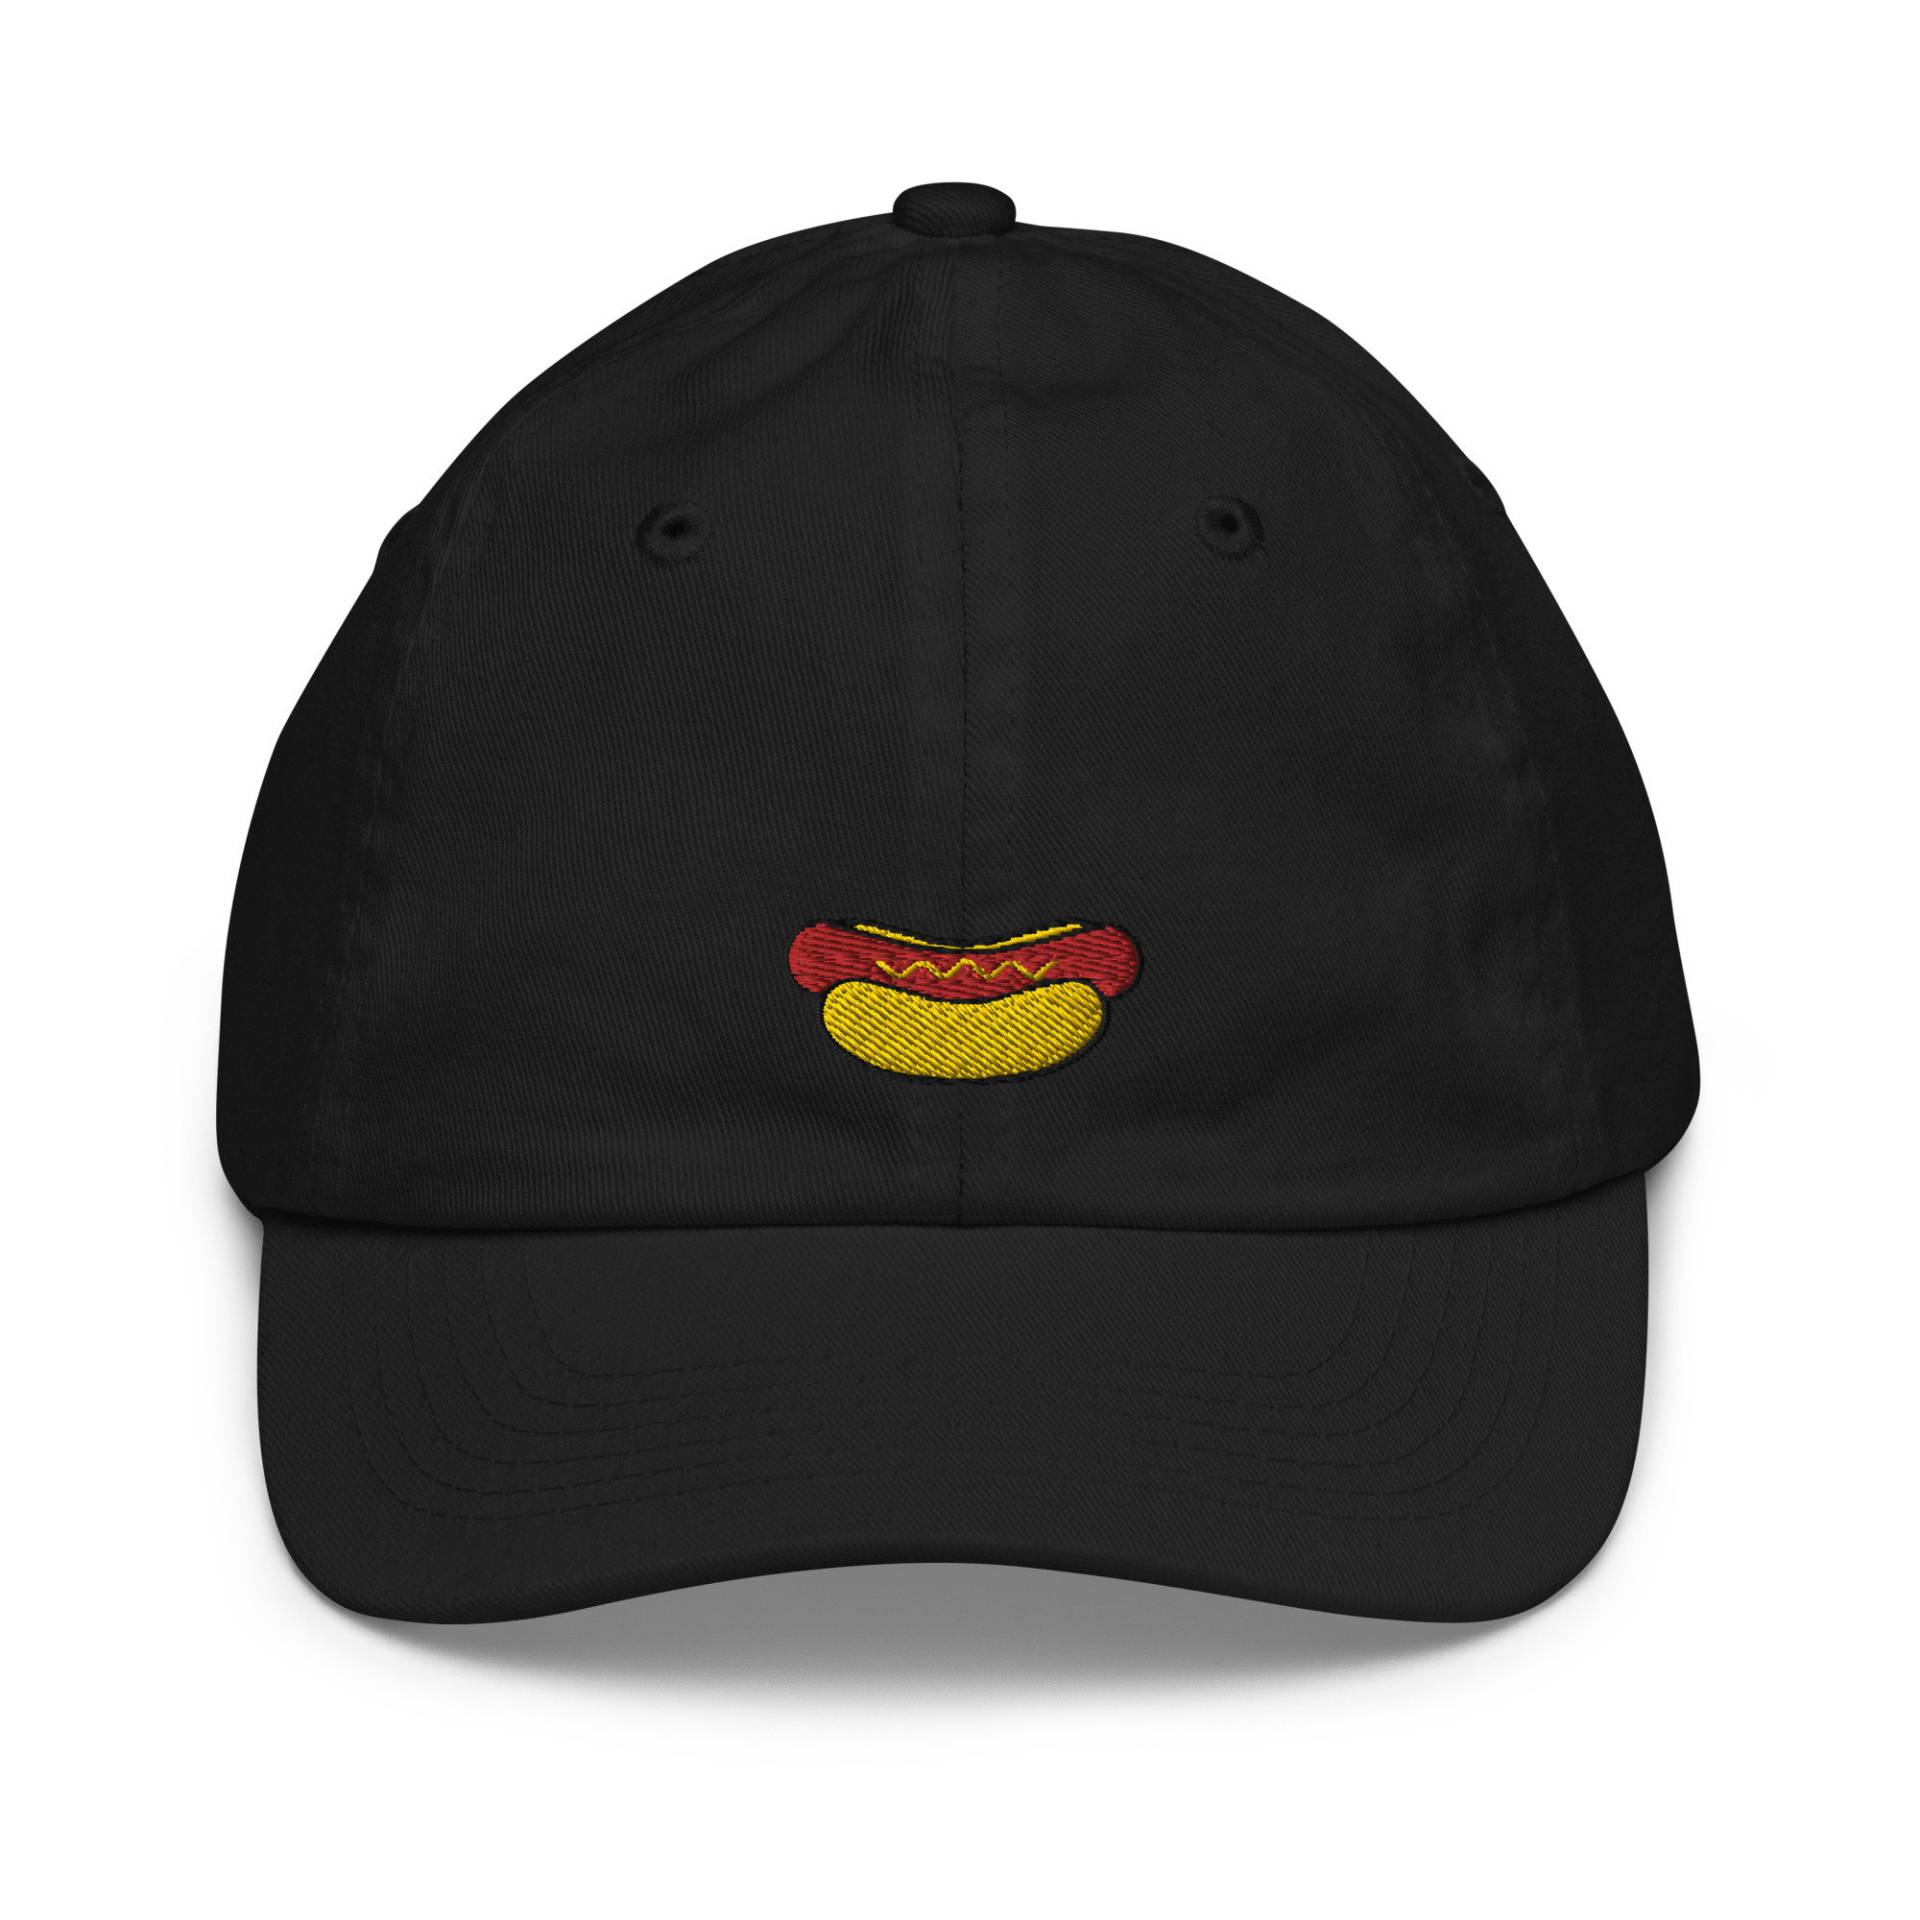 Kinder Hot Dog Jugend Baseball Cap, Bestickte Kindermütze, Kindermütze Geschenk - Mehrere Farben von GetStitch